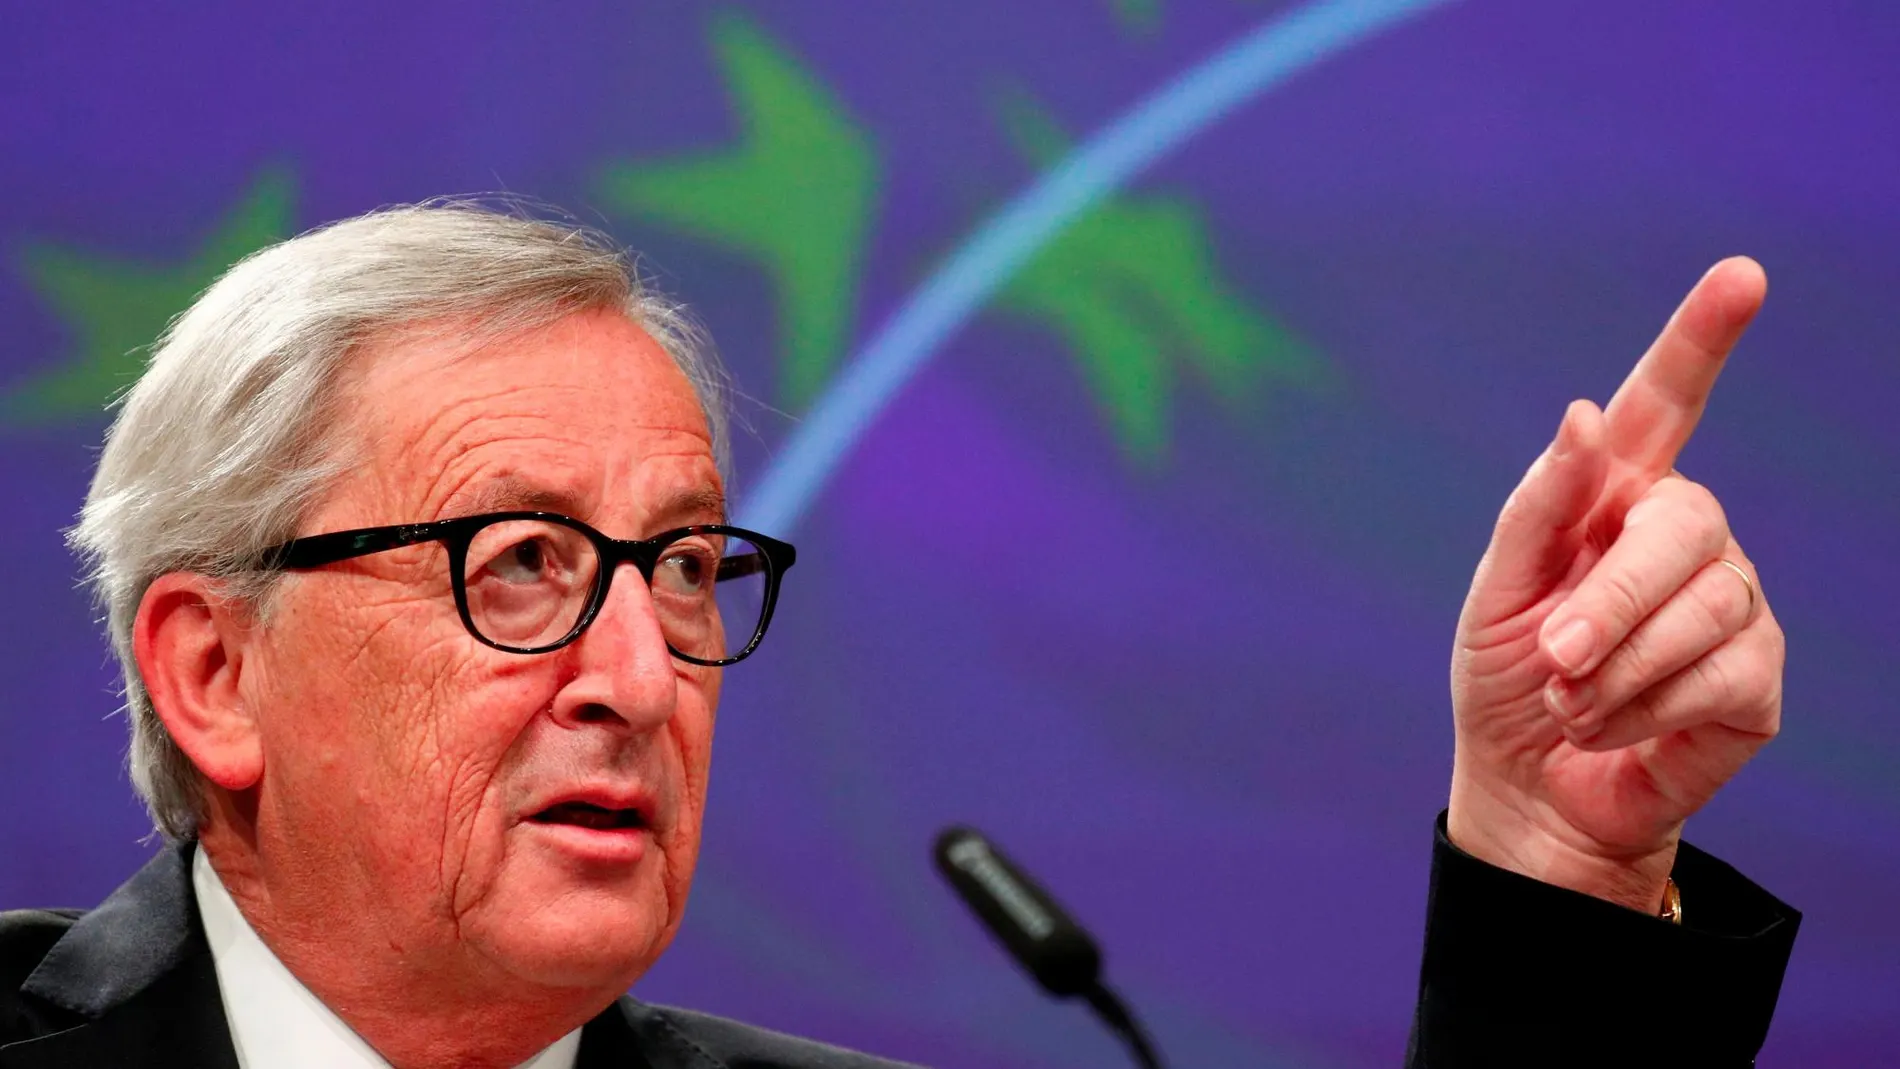 El presidente de la CE, Jean-Claude Juncker